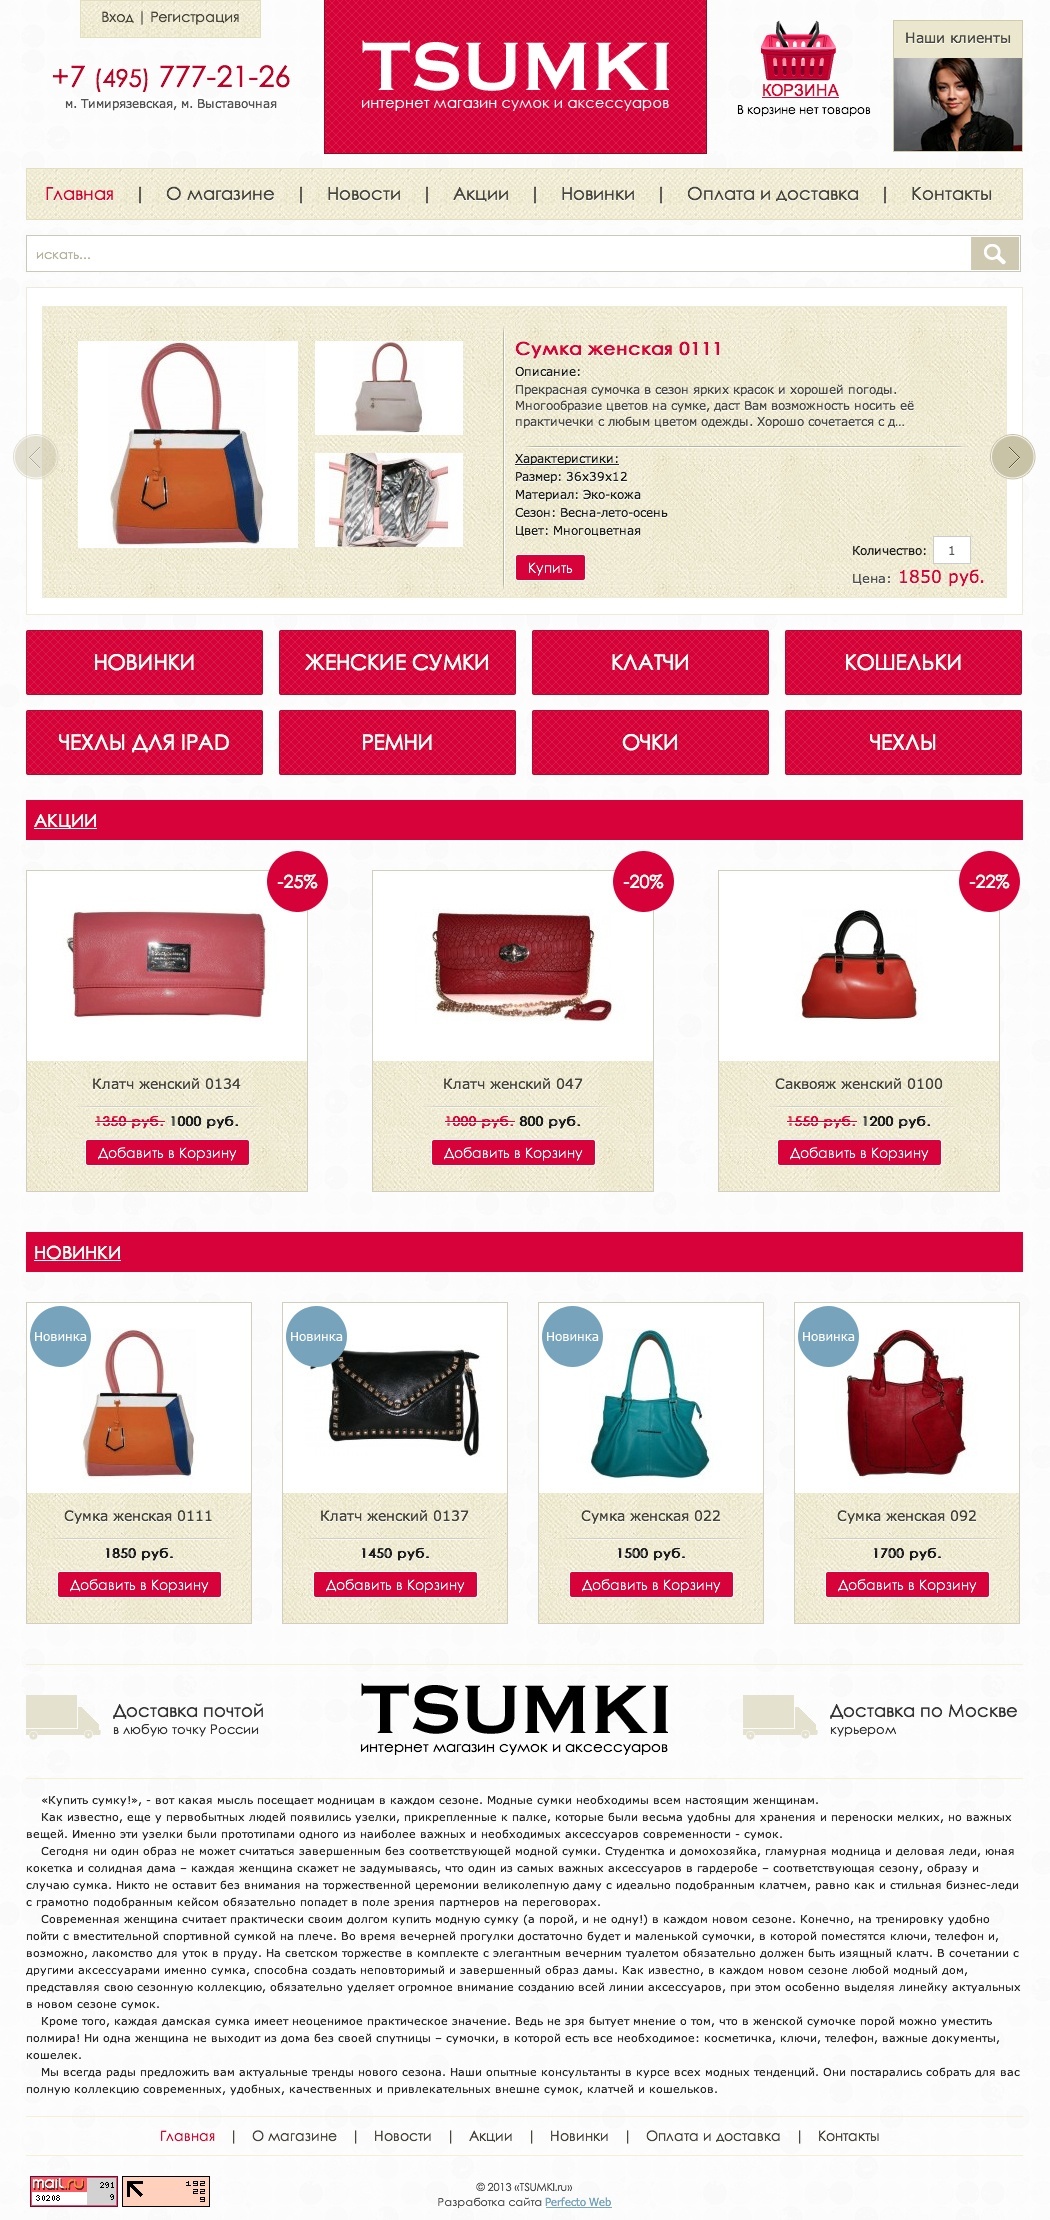 Tsumki - интернет магазин сумок и аксессуаров №1- Главная страница